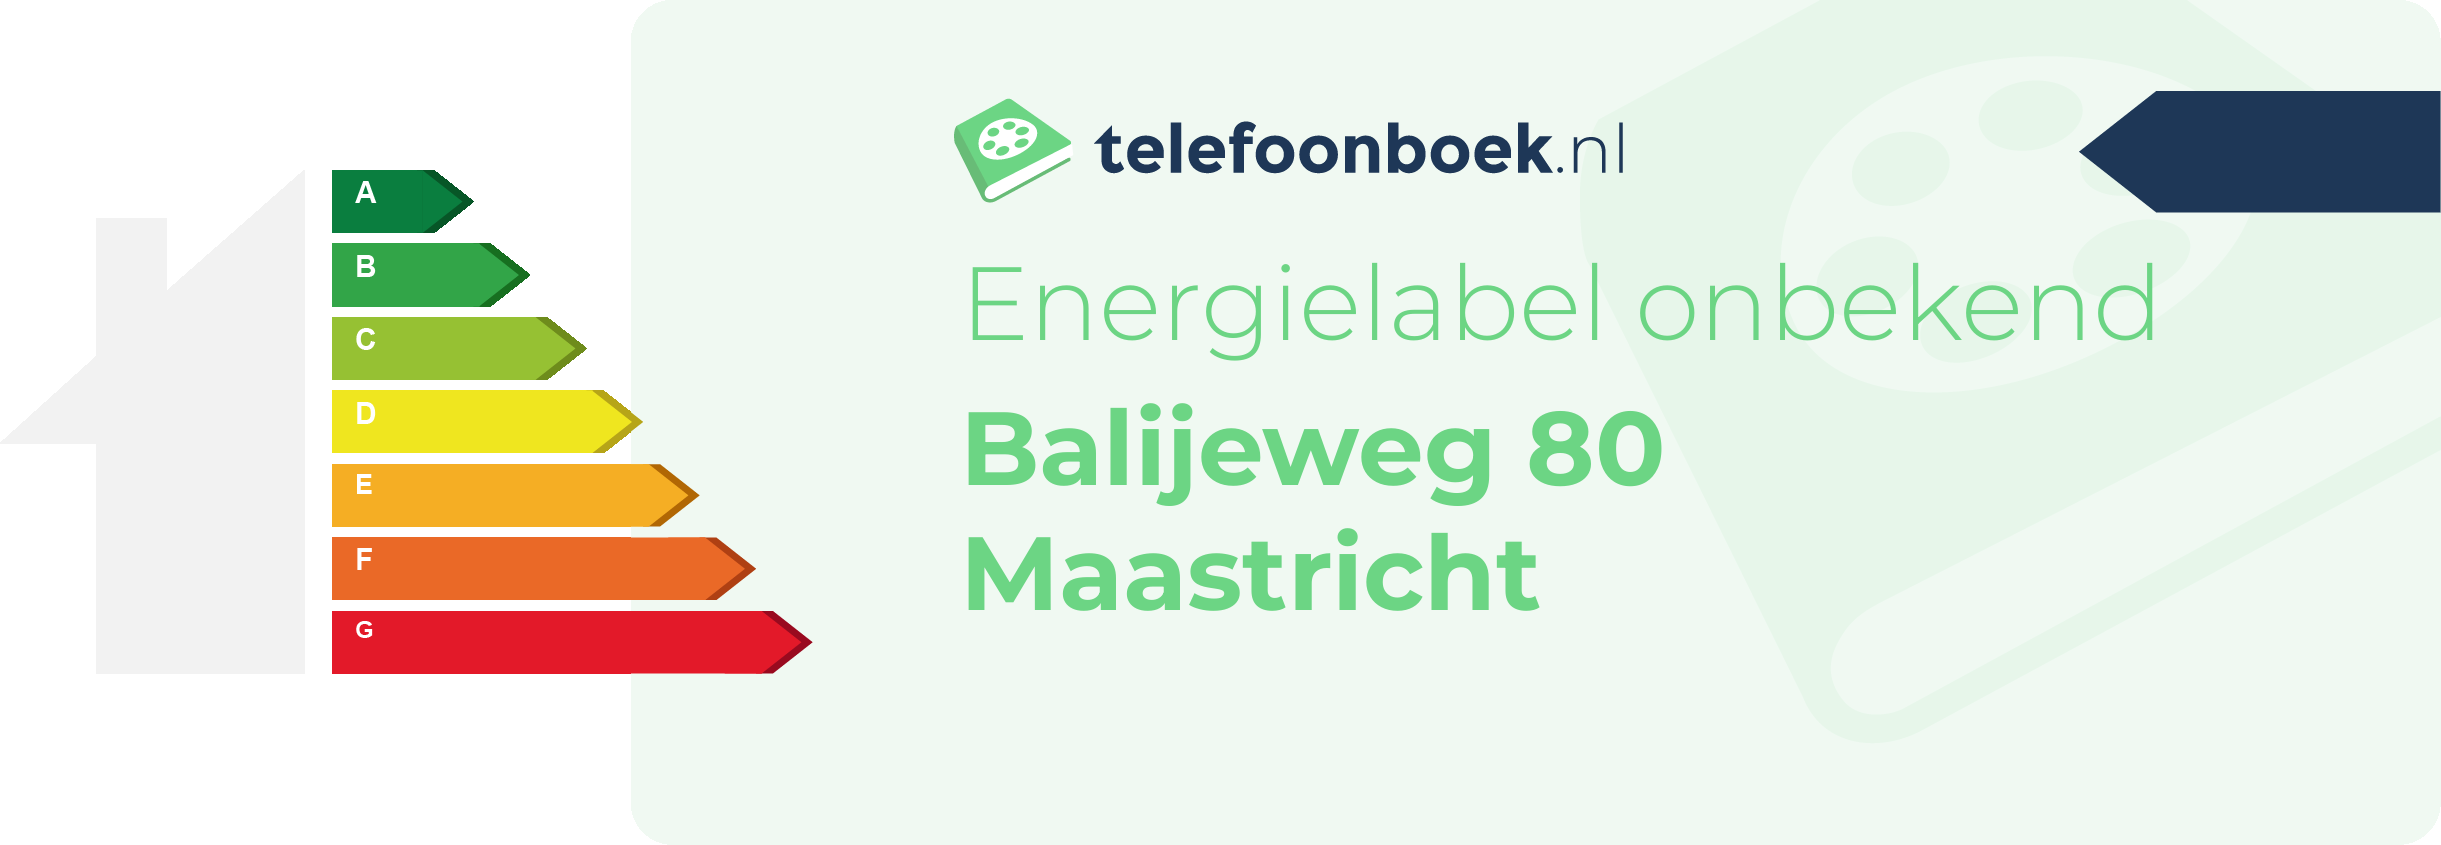 Energielabel Balijeweg 80 Maastricht